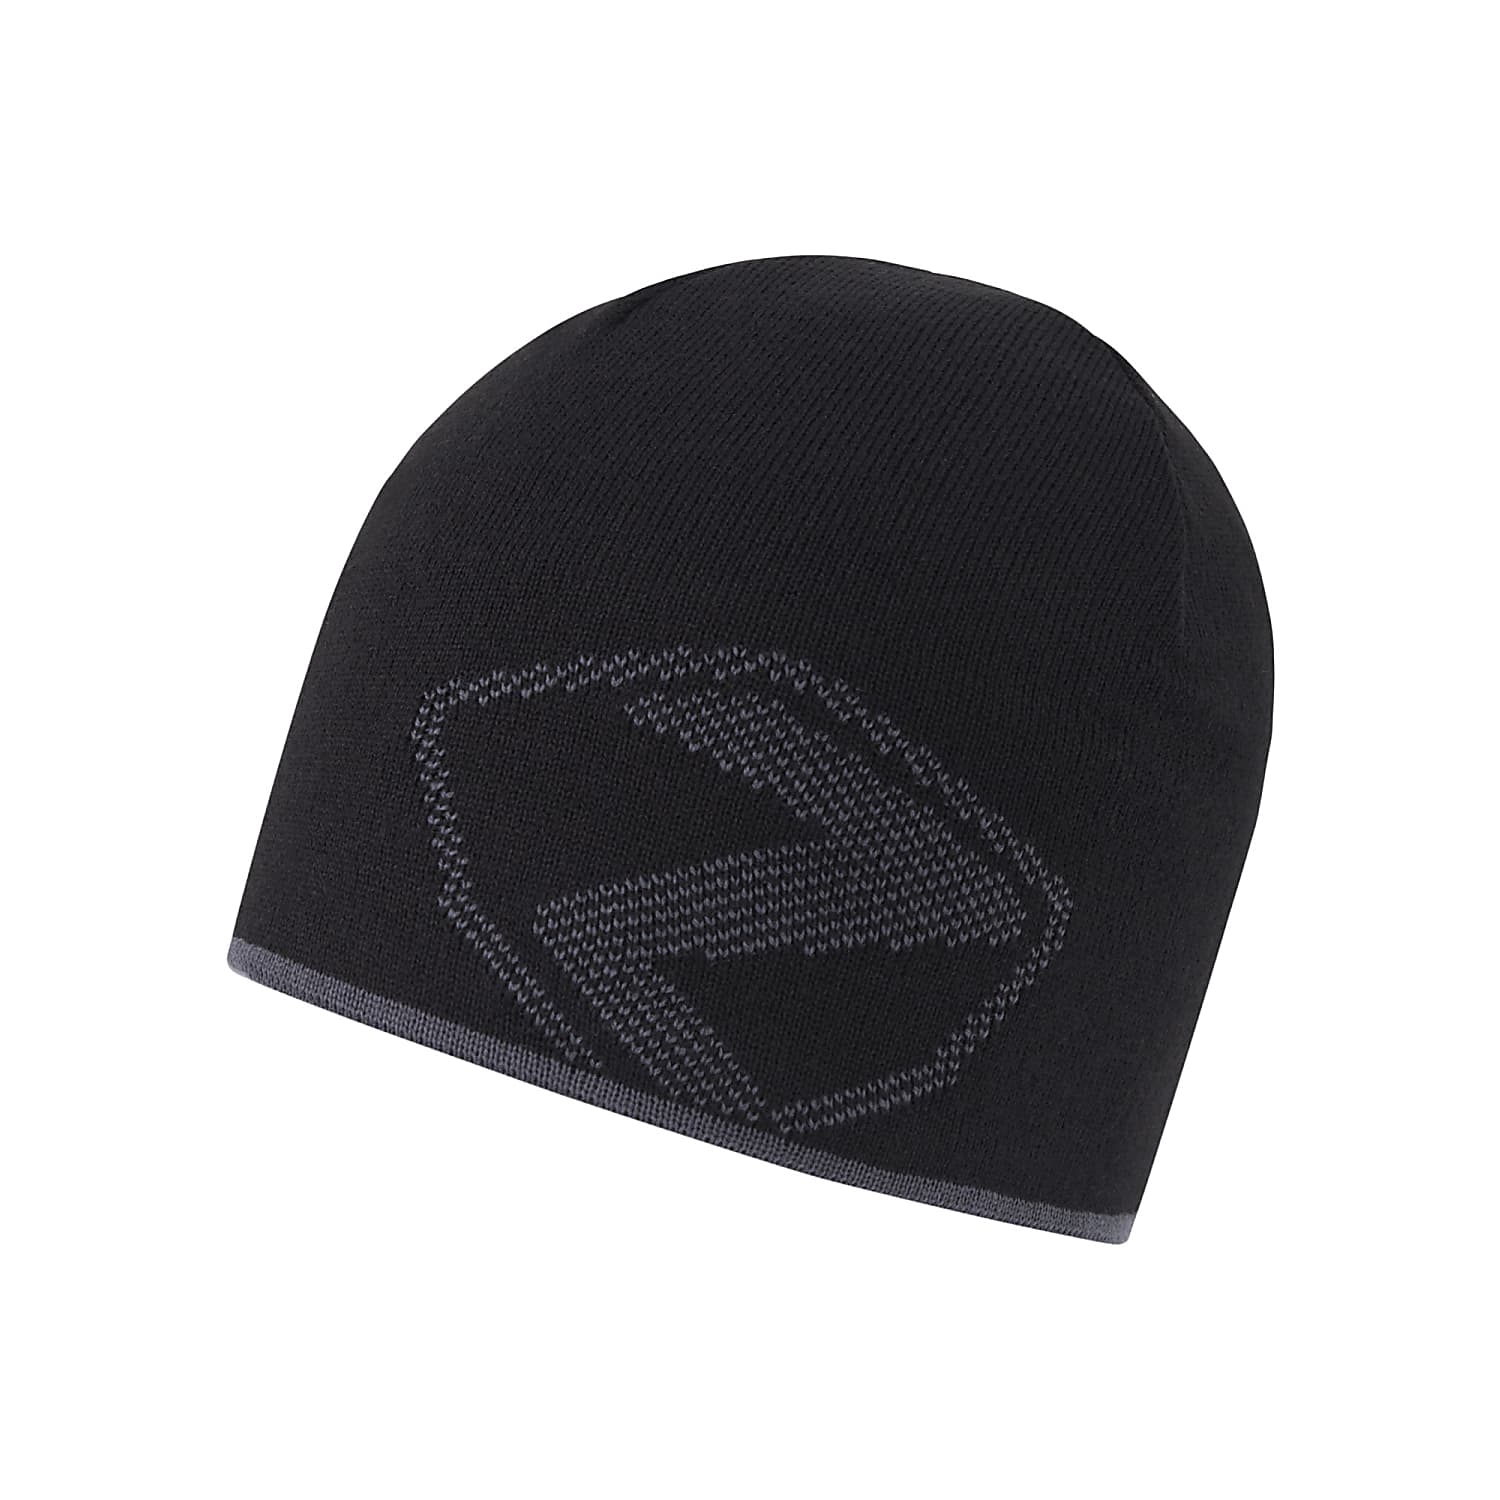 IPHUR Jetzt Ziener HAT, Black kaufen online